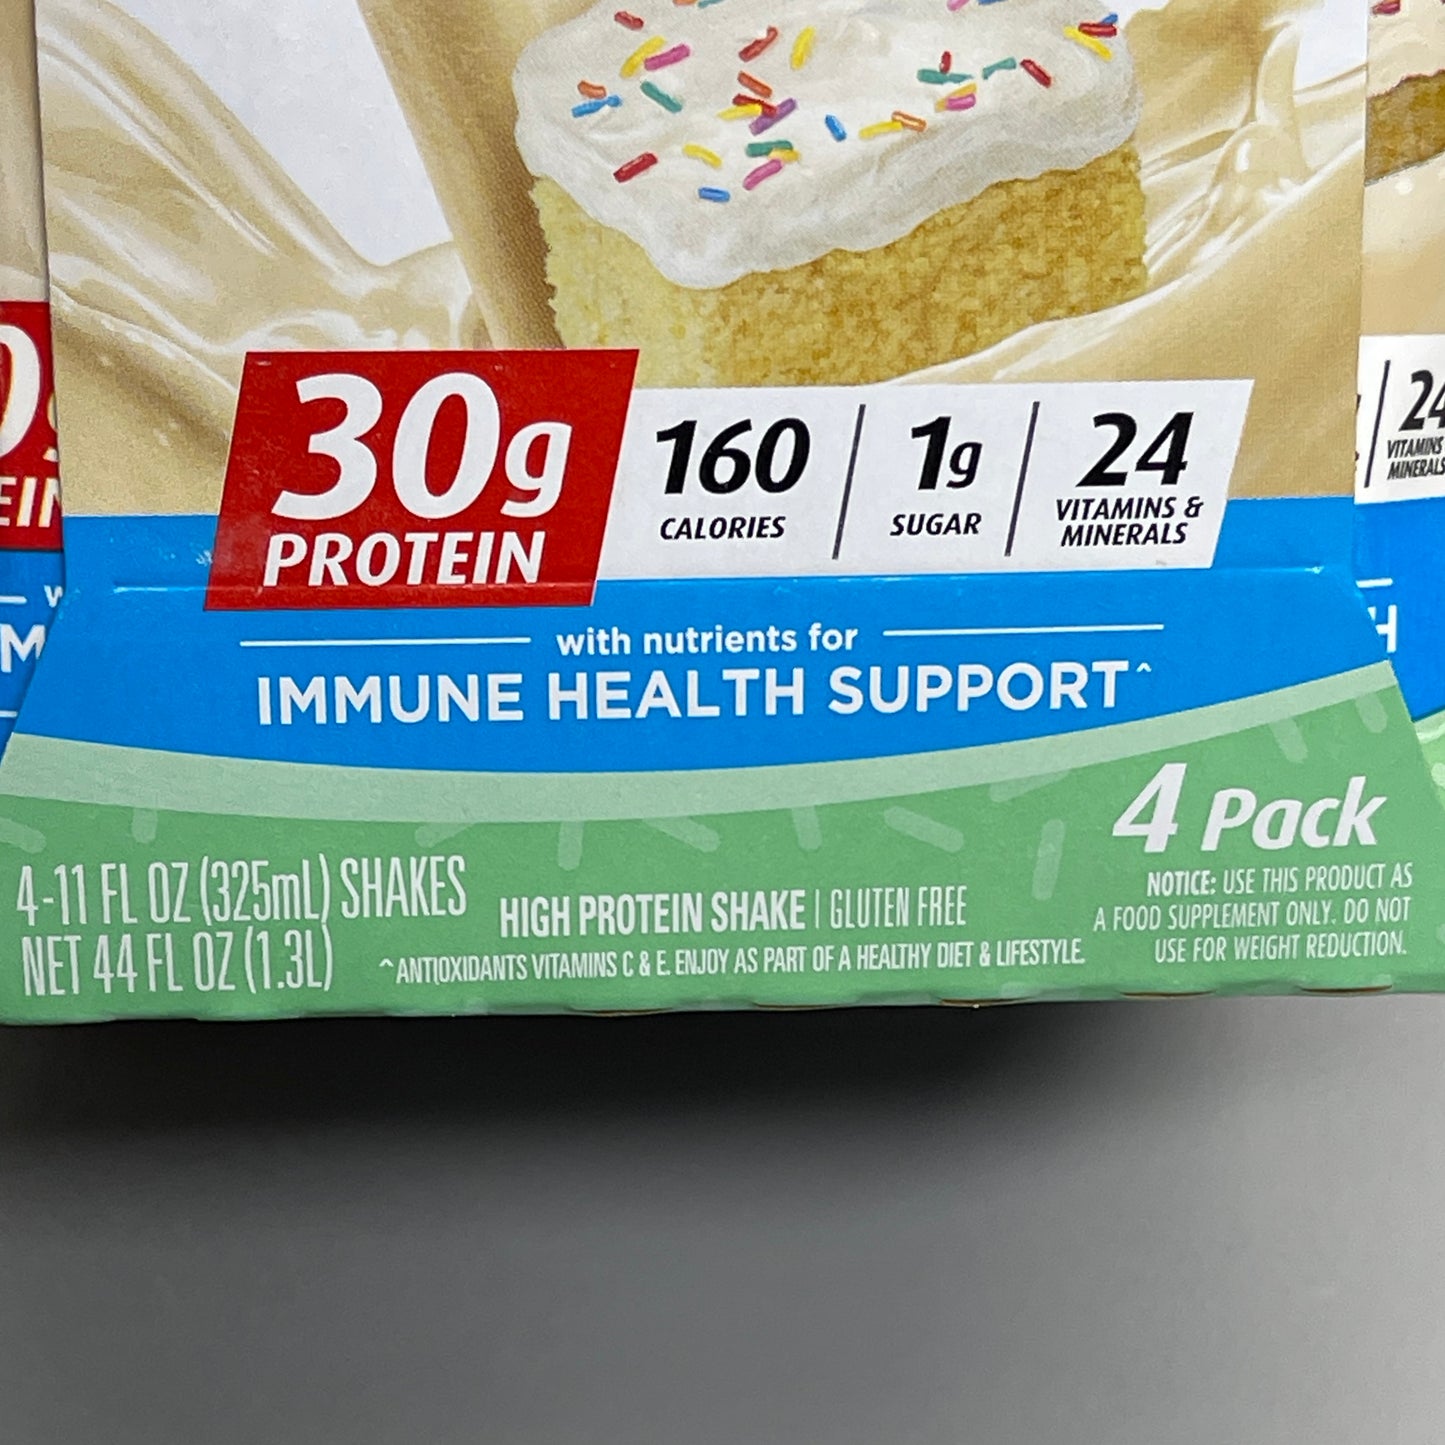 PREMIER PROTEIN 12-PK Shake Cake Batter Delight 30g Protein 11 oz BB 02/24 (New)